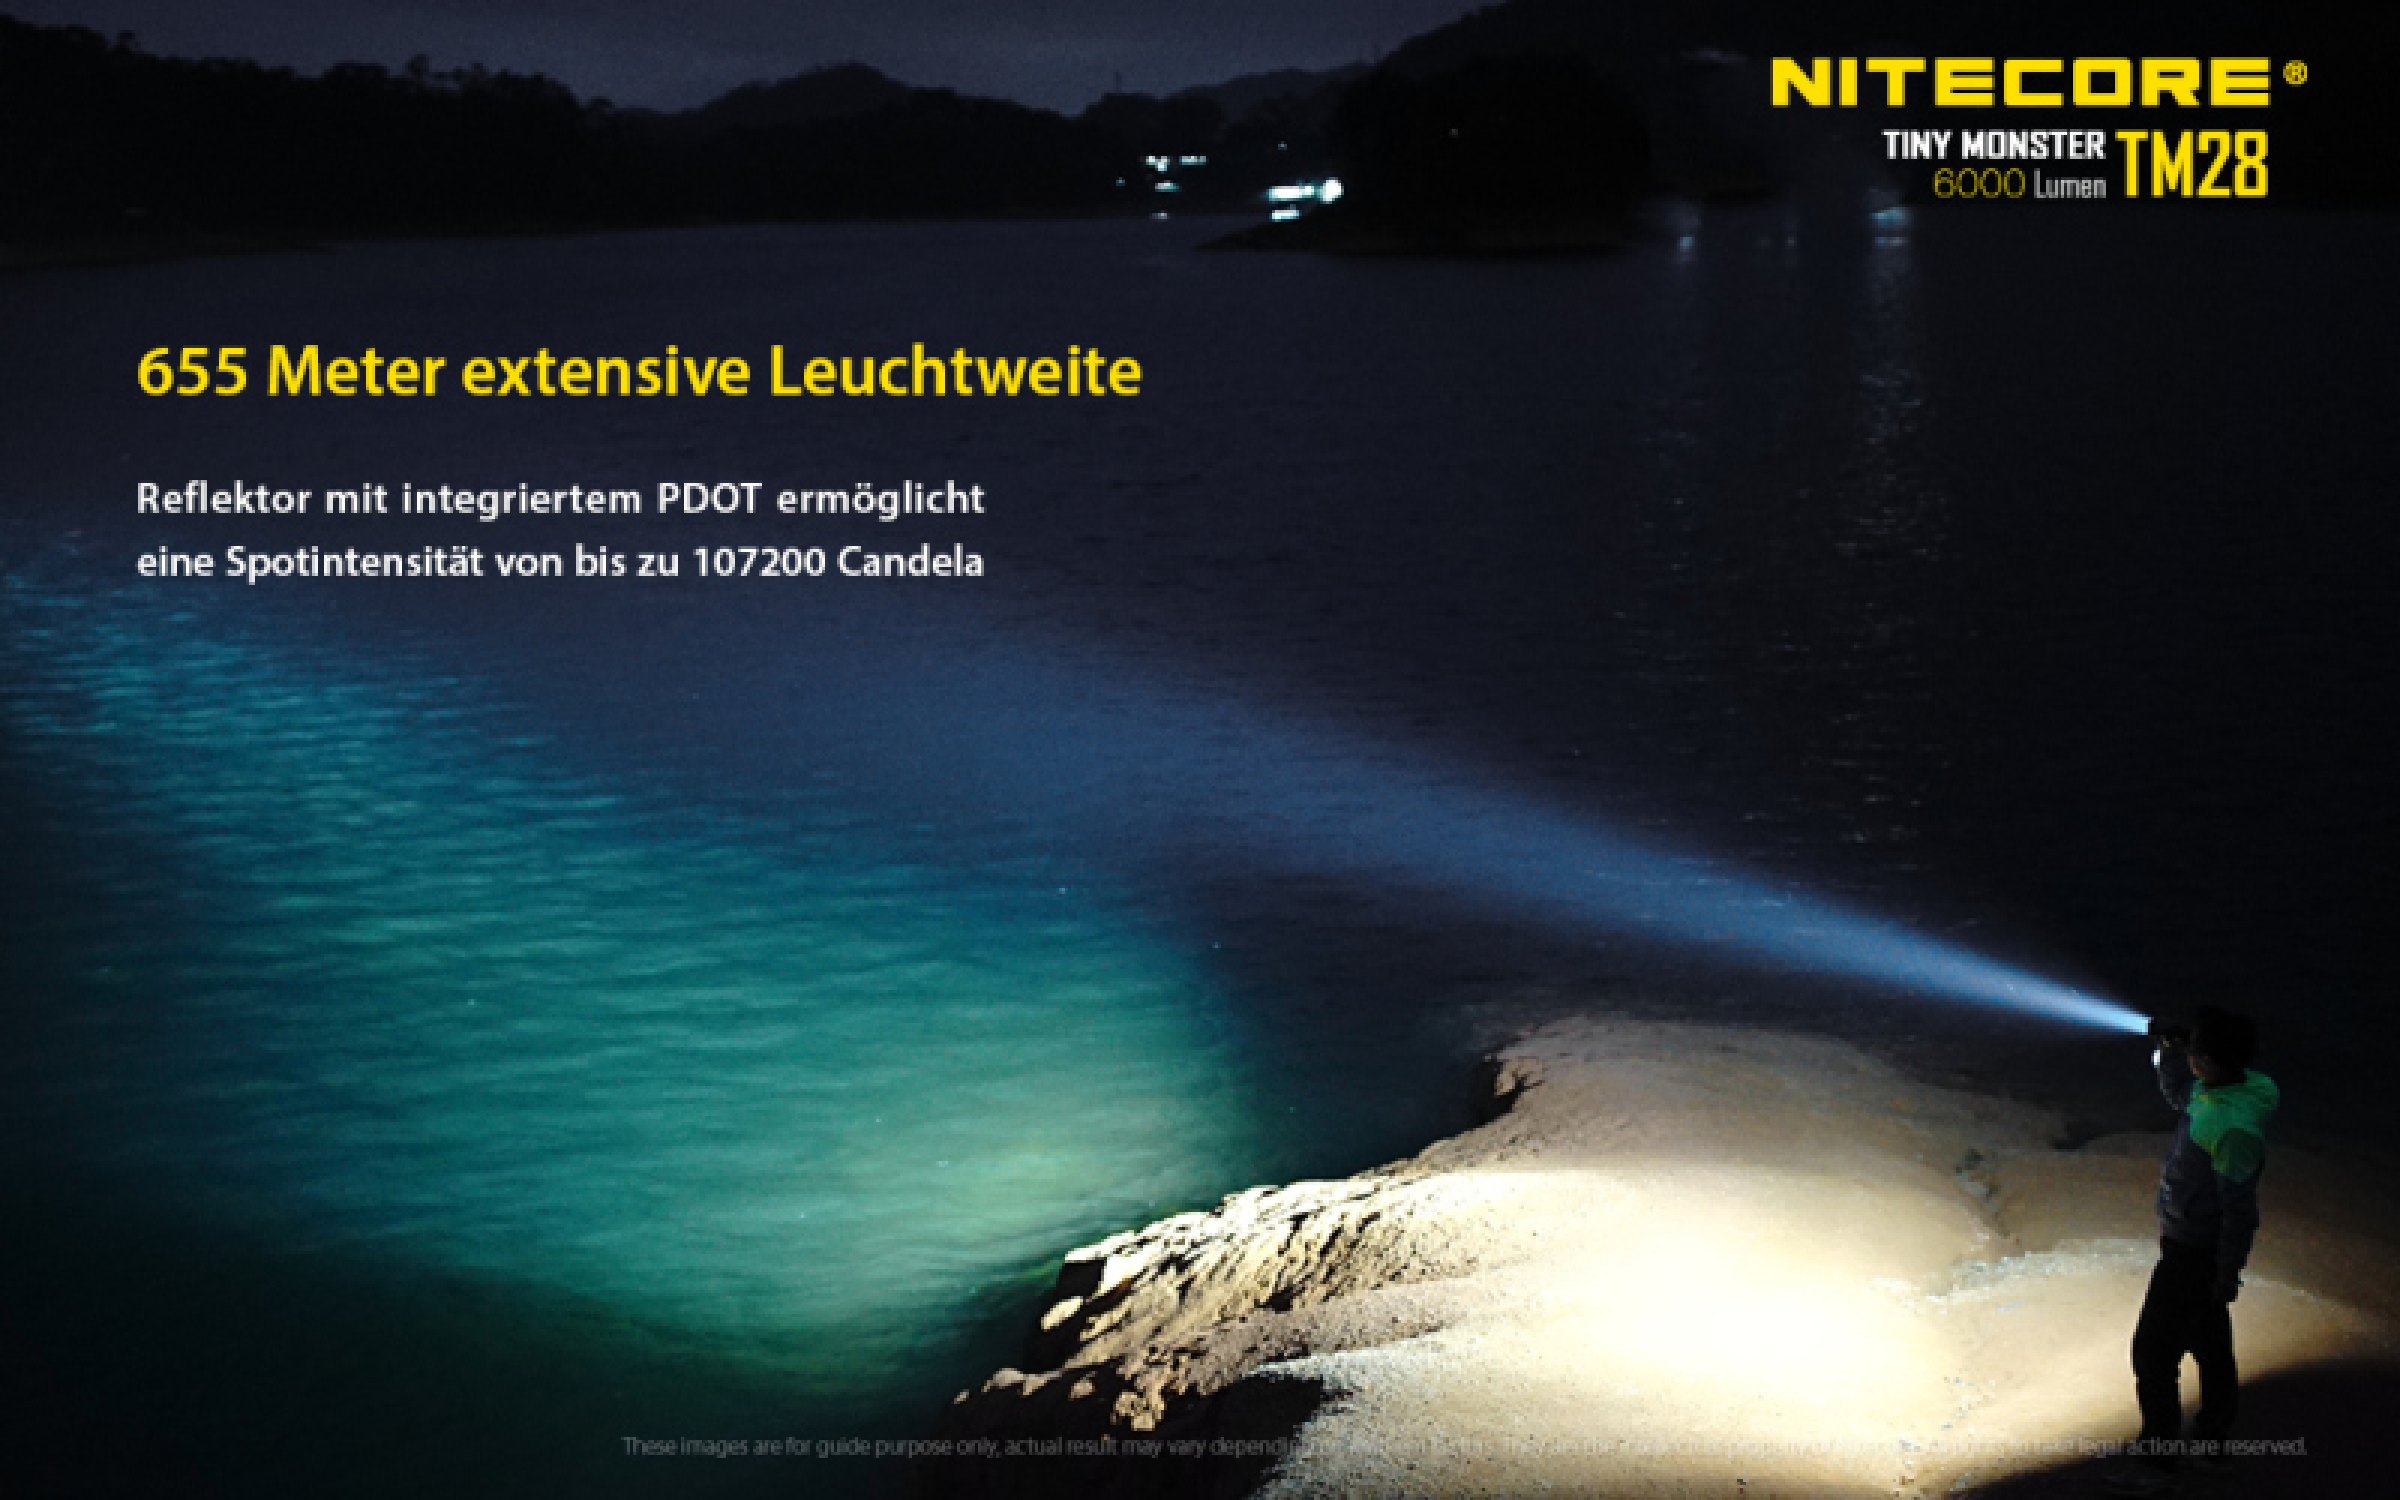 Nitecore Taschenlampe TM28 - 6000 Lumen